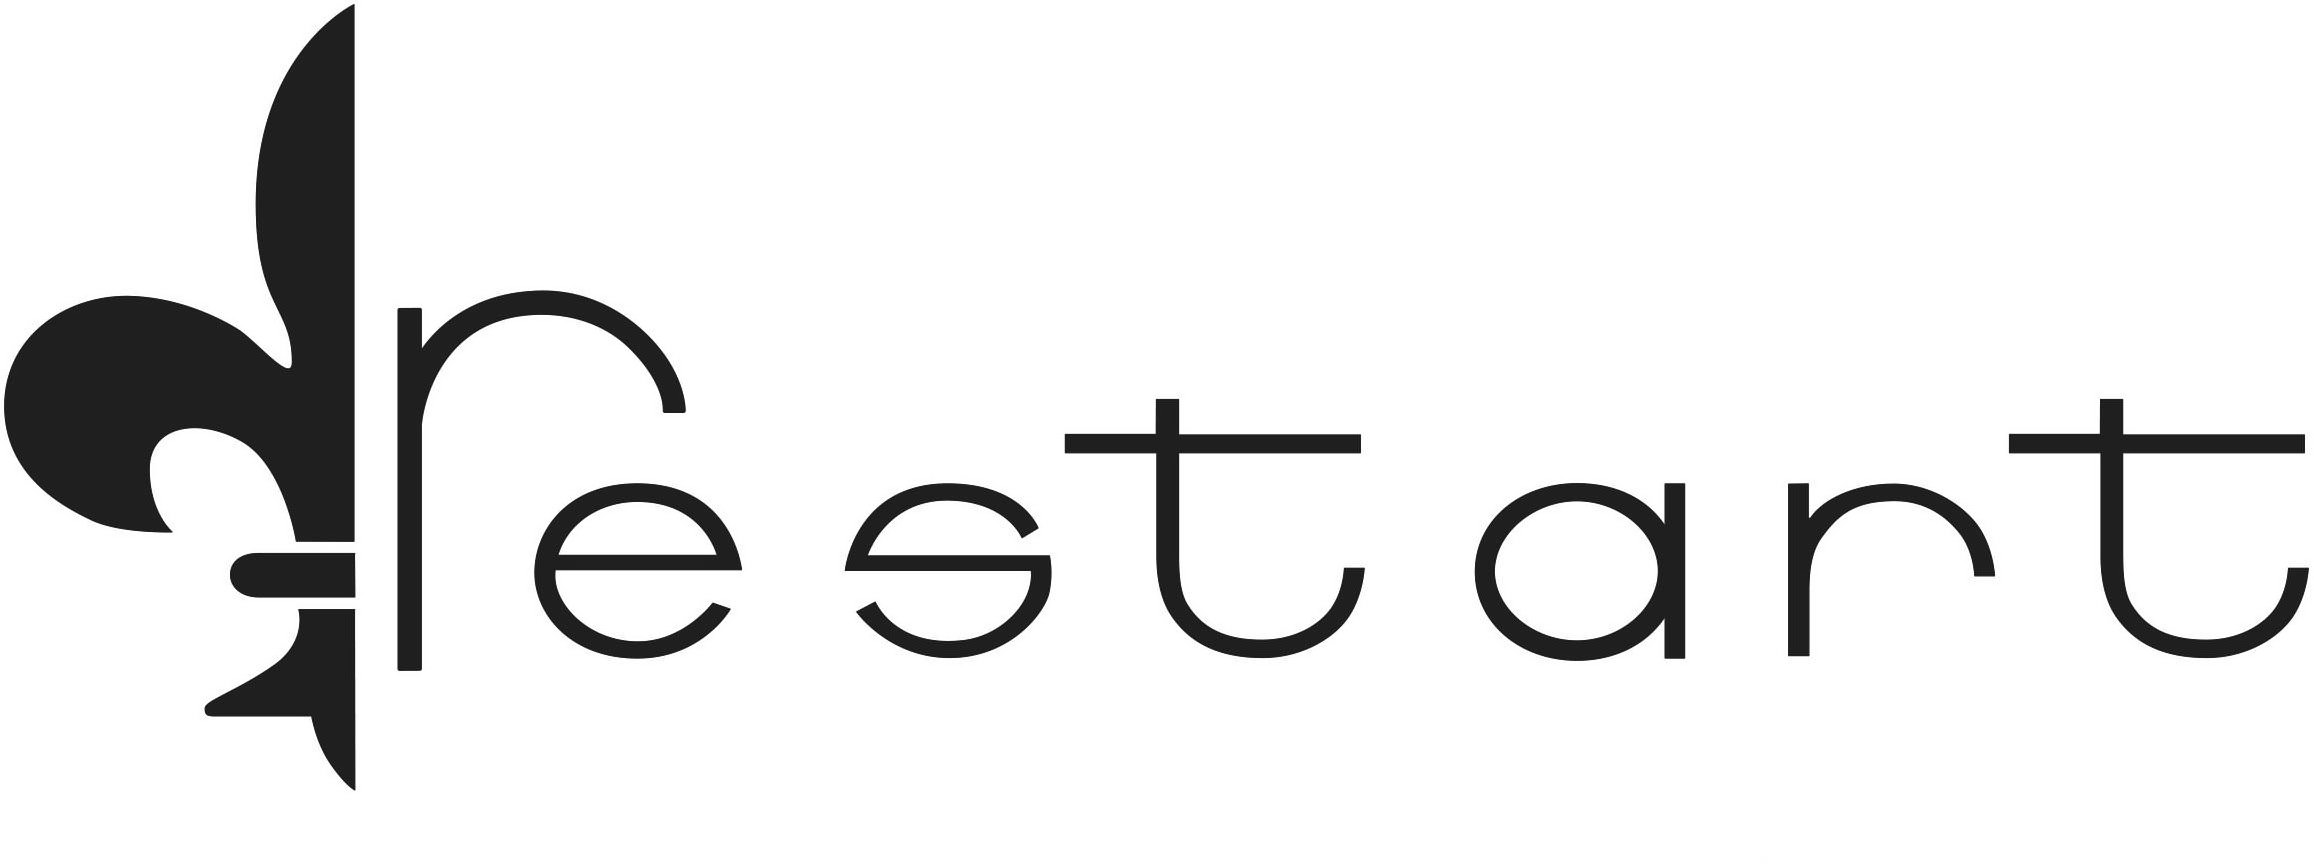 Trademark Logo RESTART